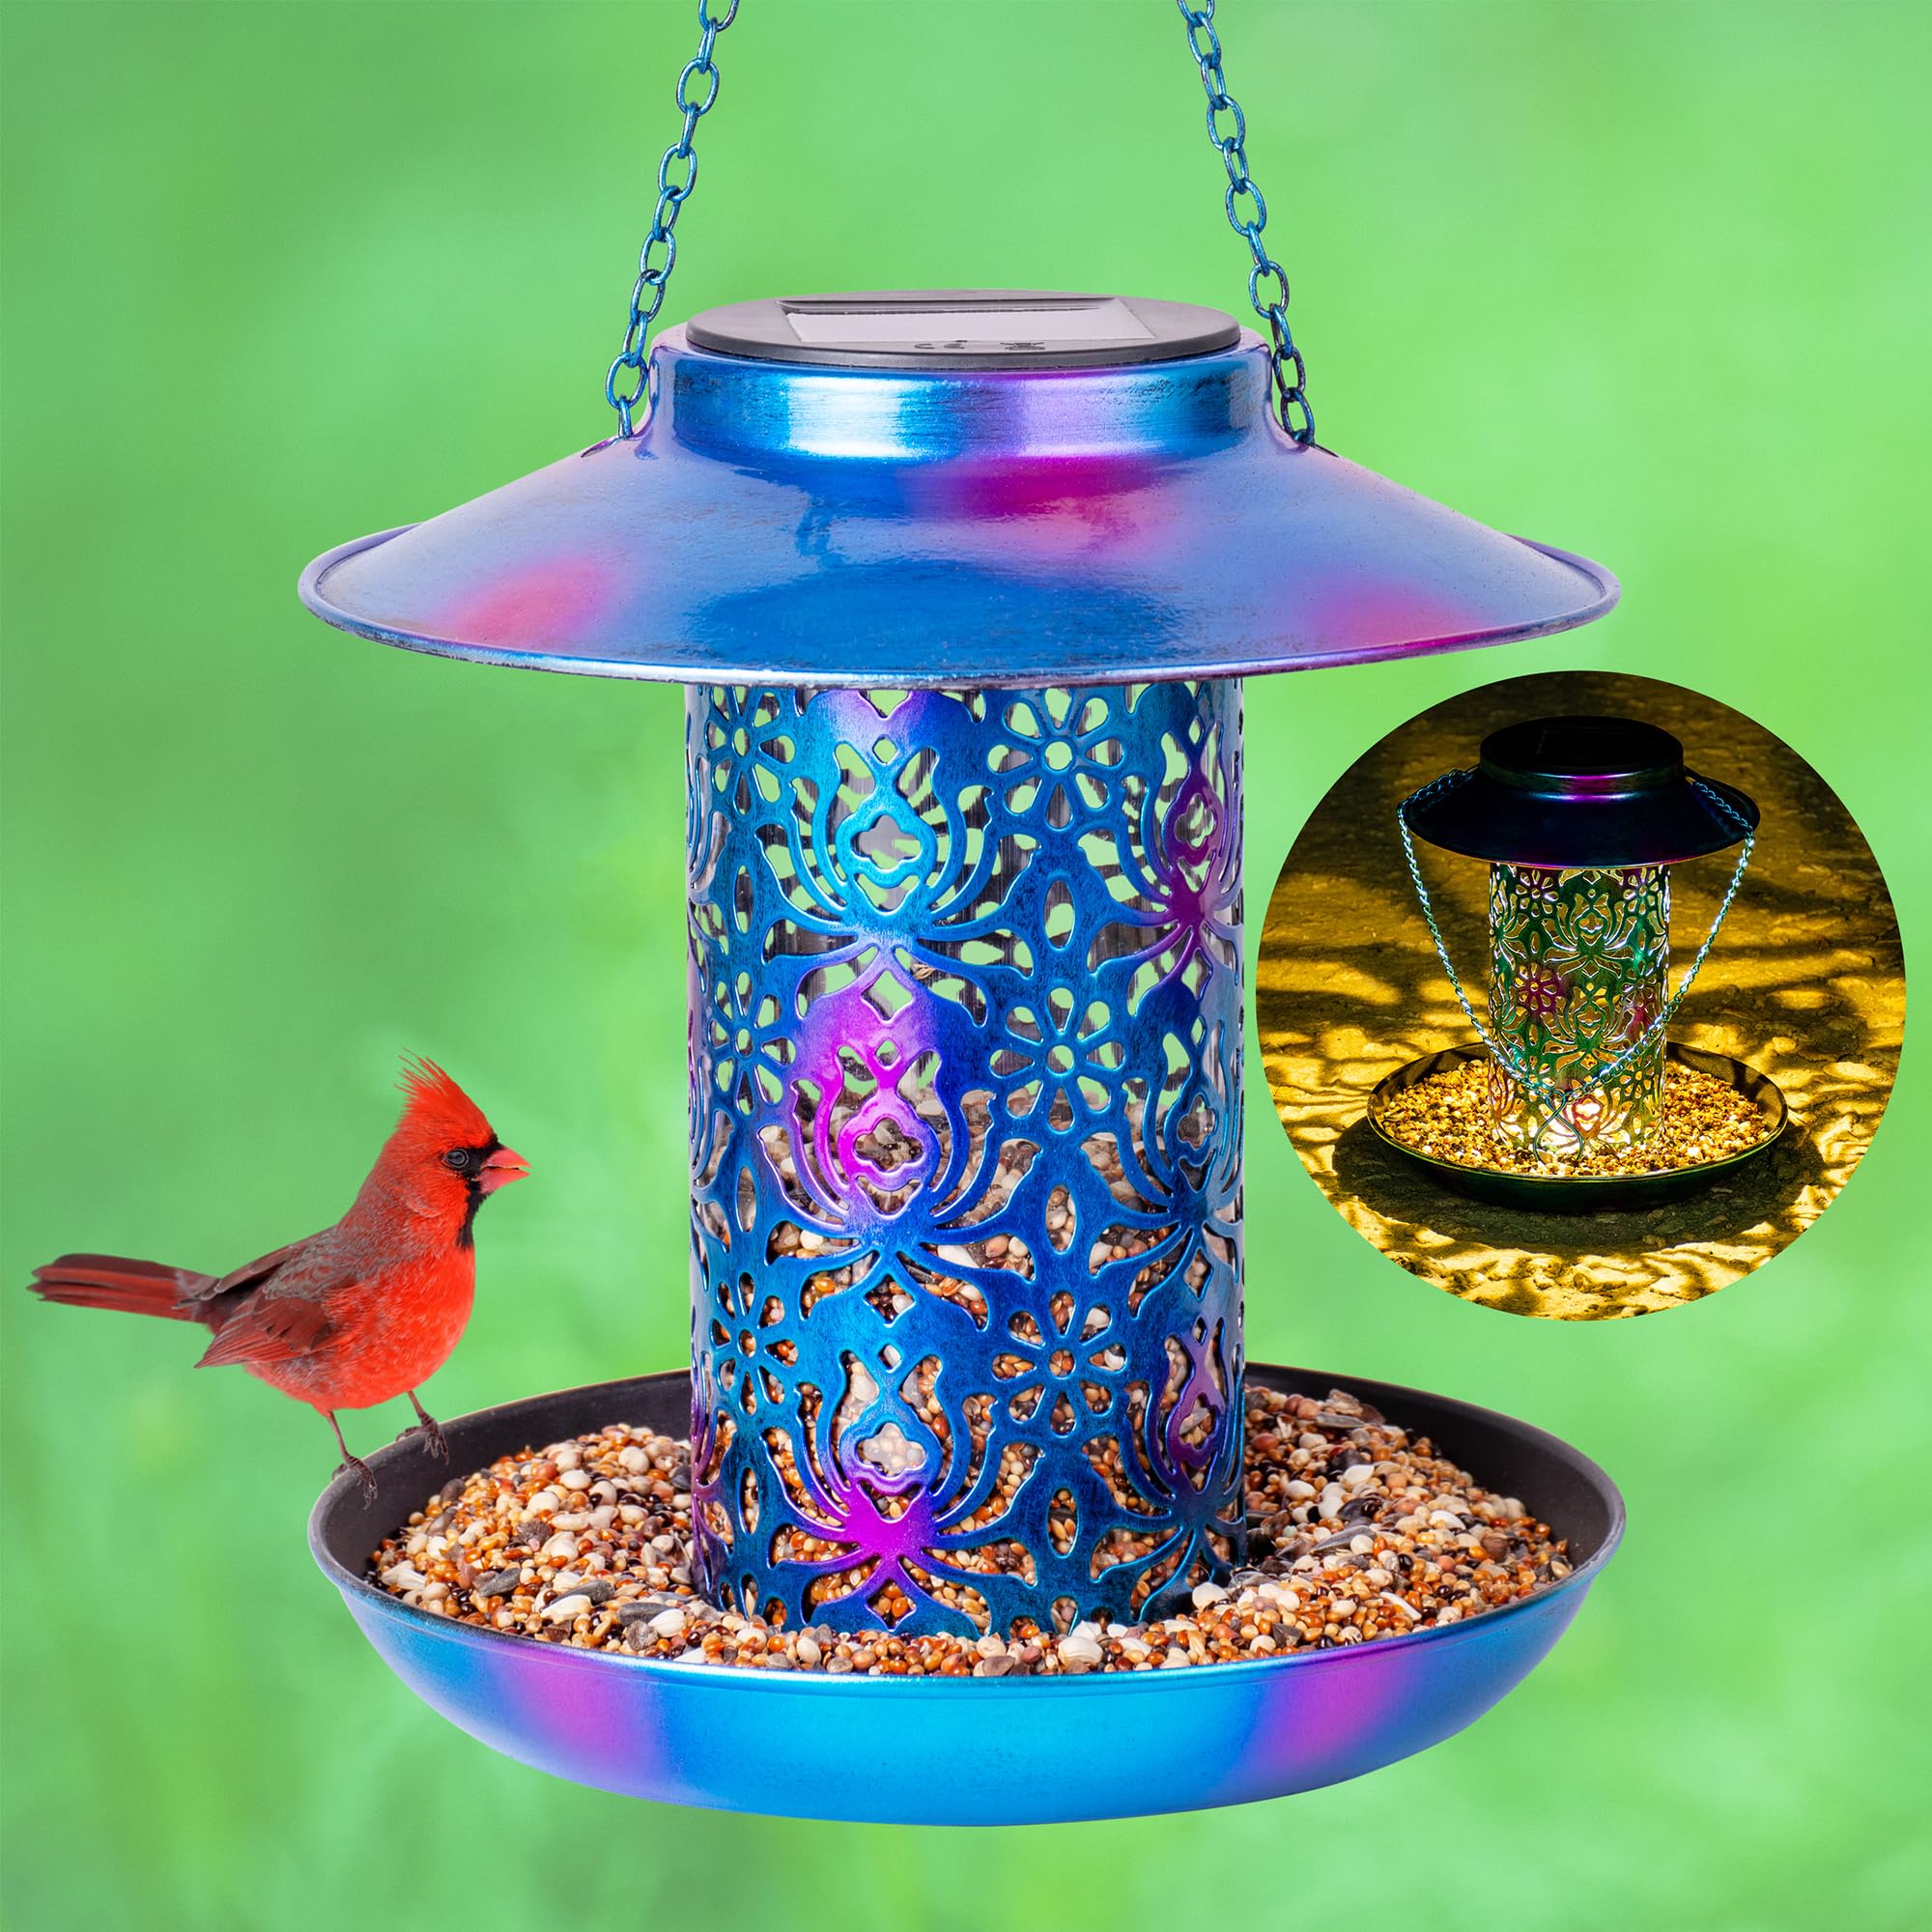 Ottsuls Solar Bird Feeder for Outdoors Hanging, Metal Wild Cardinals Garden Lantern with S Hook, Weatherproof and Water Resistan